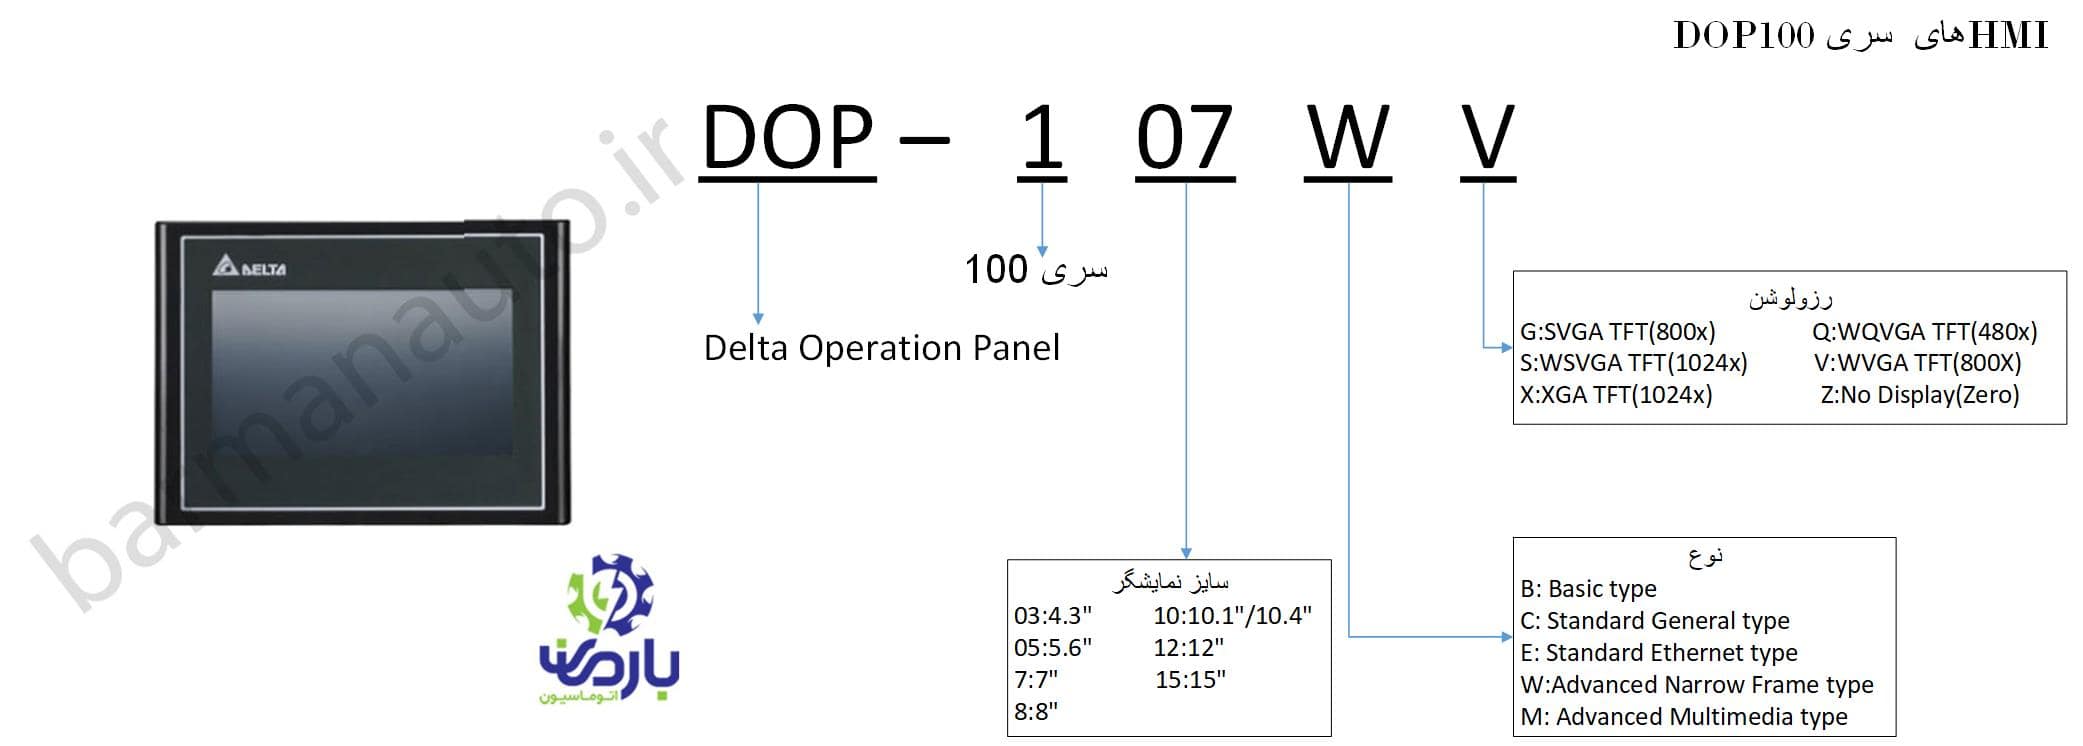 کد پلاک hmi delta سری dop-103wq